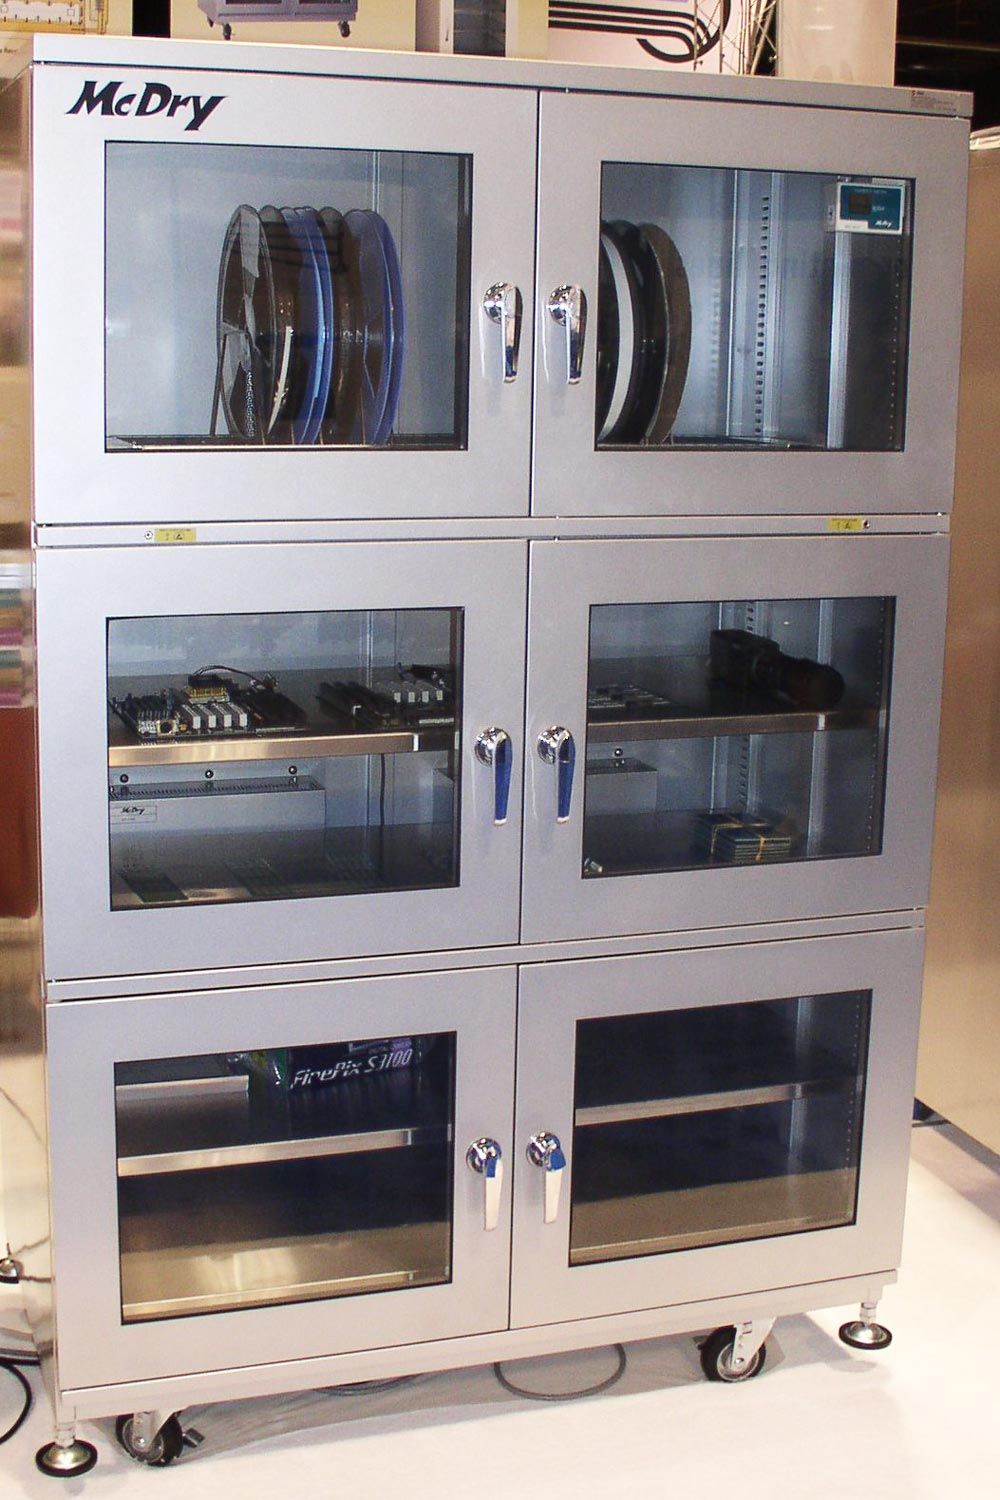 SMT Reel Storage Desiccator Cabinets